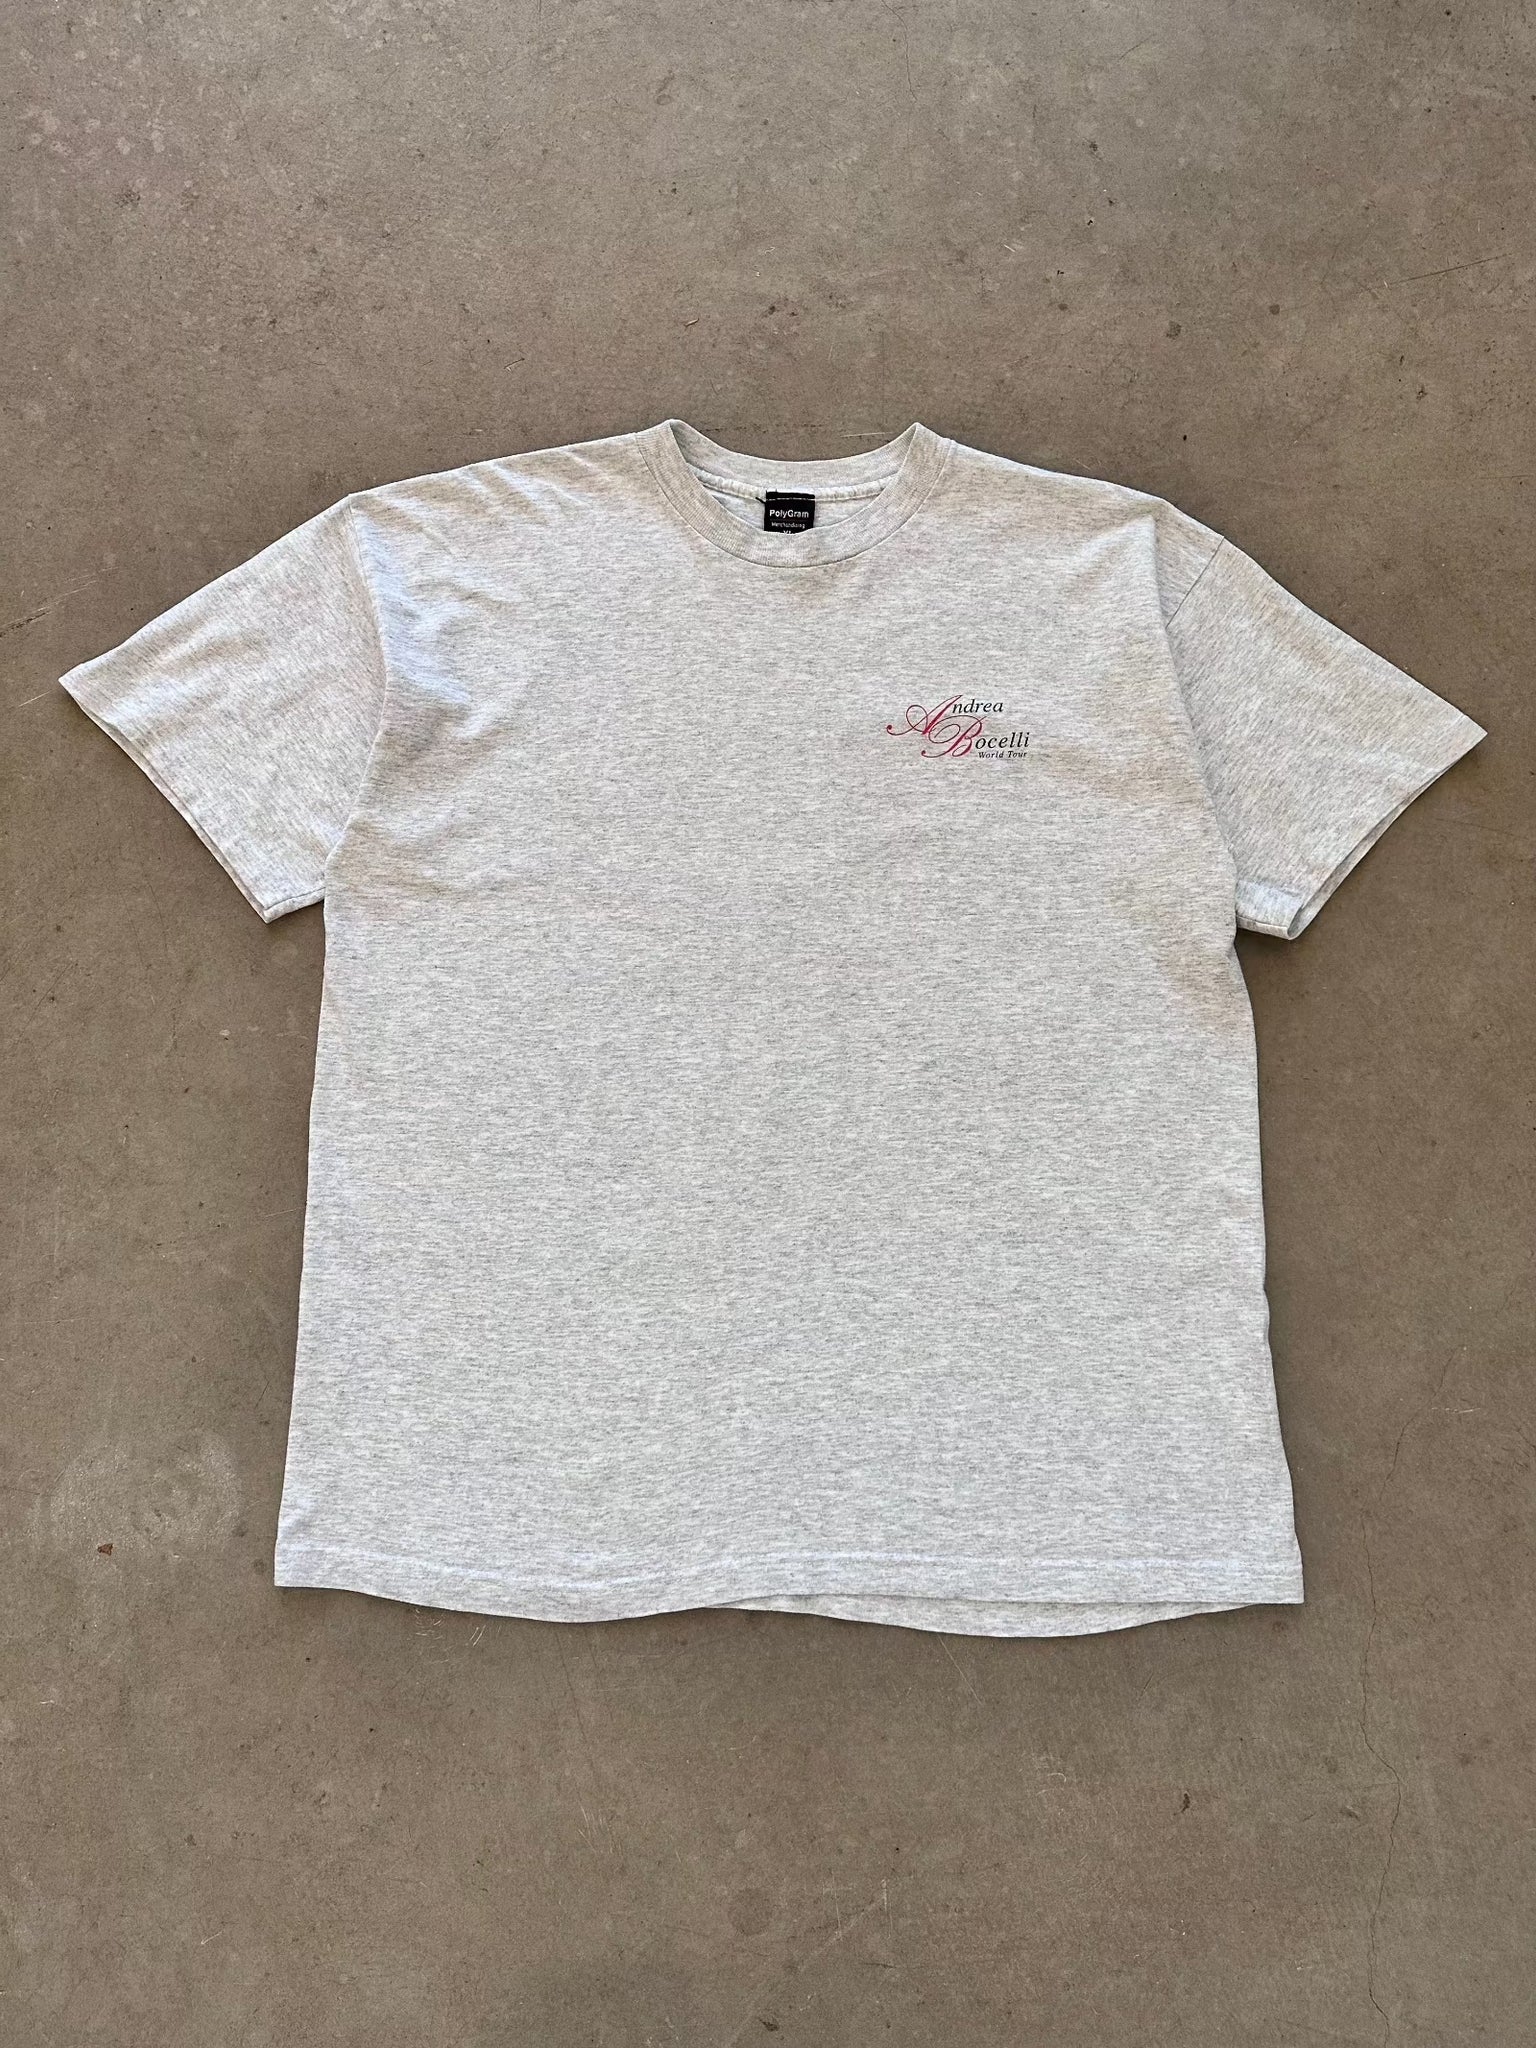 1990's Andrea Bocelli World Tour T-Shirt - XL